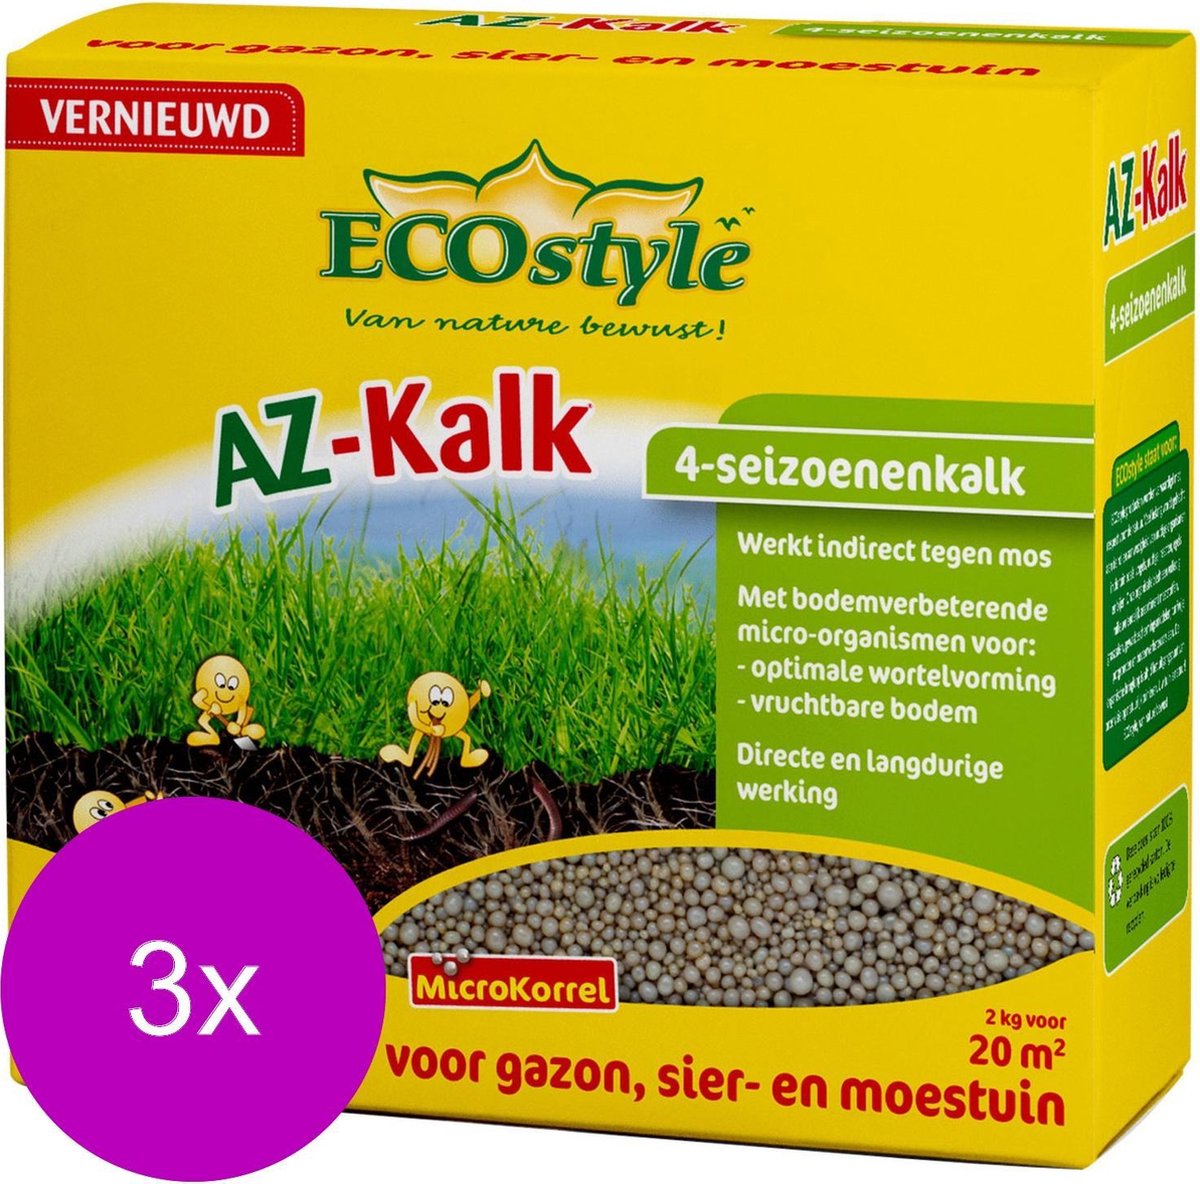 Ecostyle Az-Kalk 20 m2 - Kalk - 3 x 2 kg